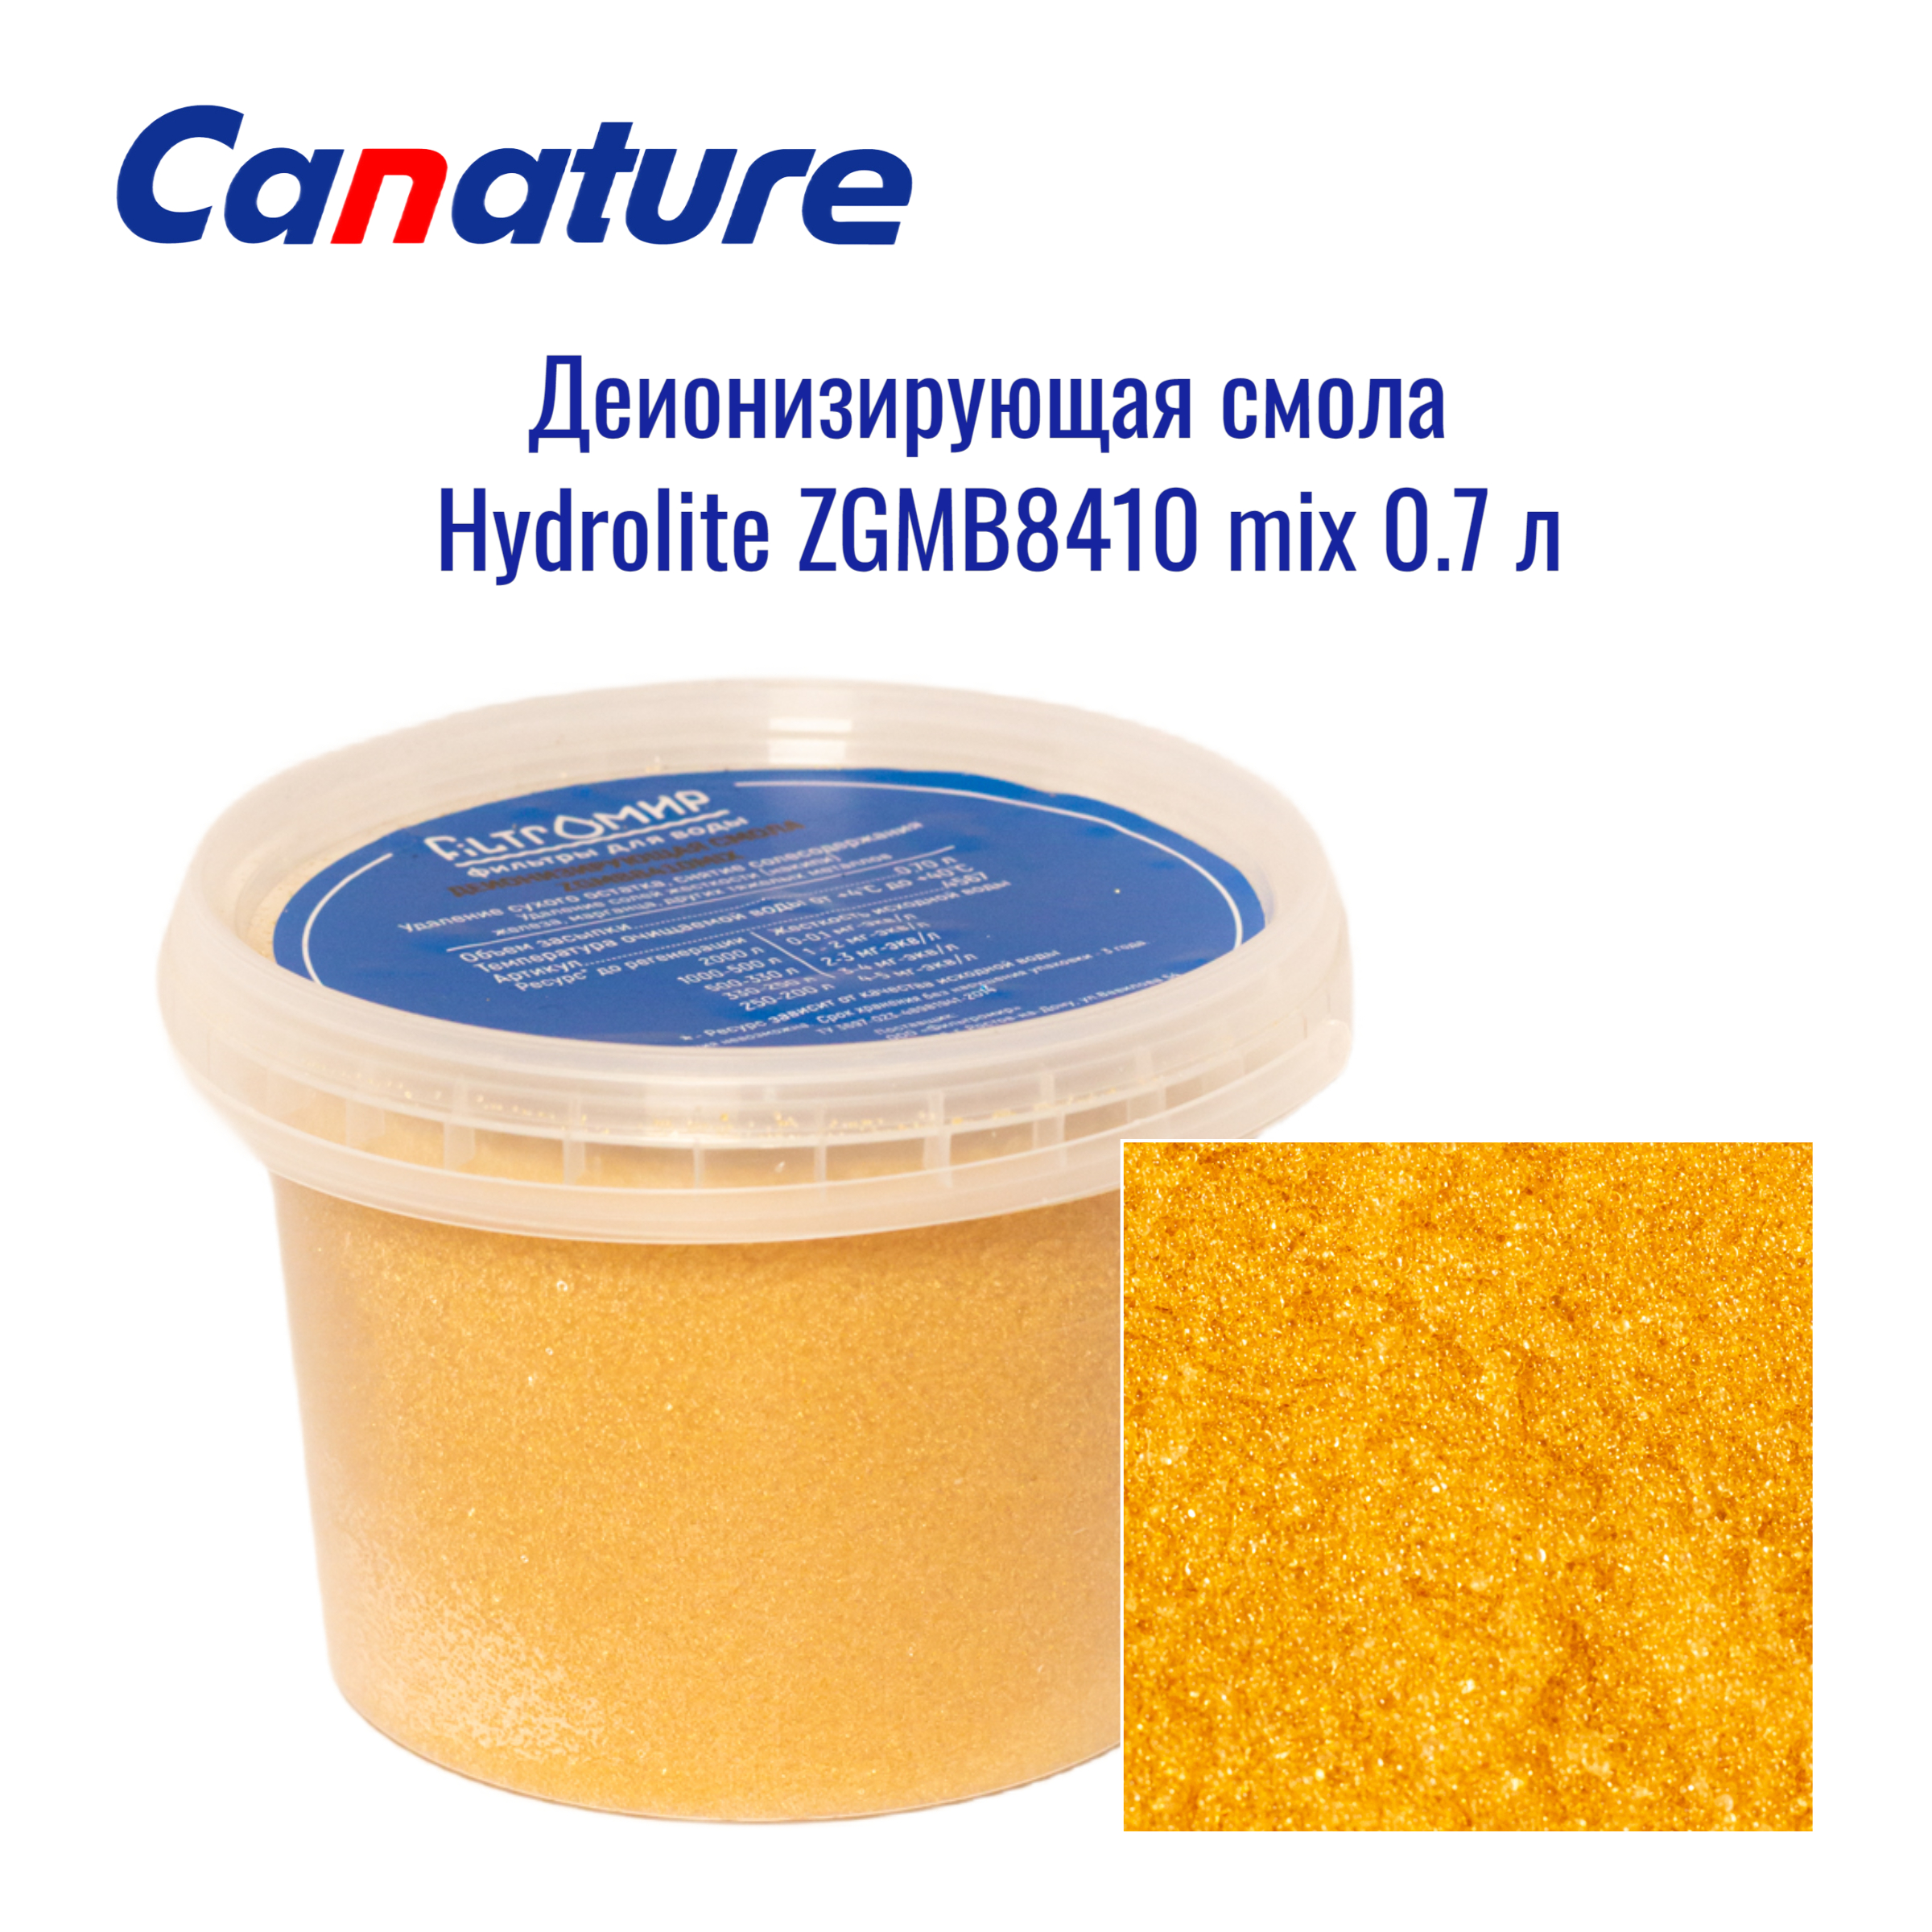 Деонизирущая Hydrolite ZGMB8410 mix 0.7 л Canature, 4574